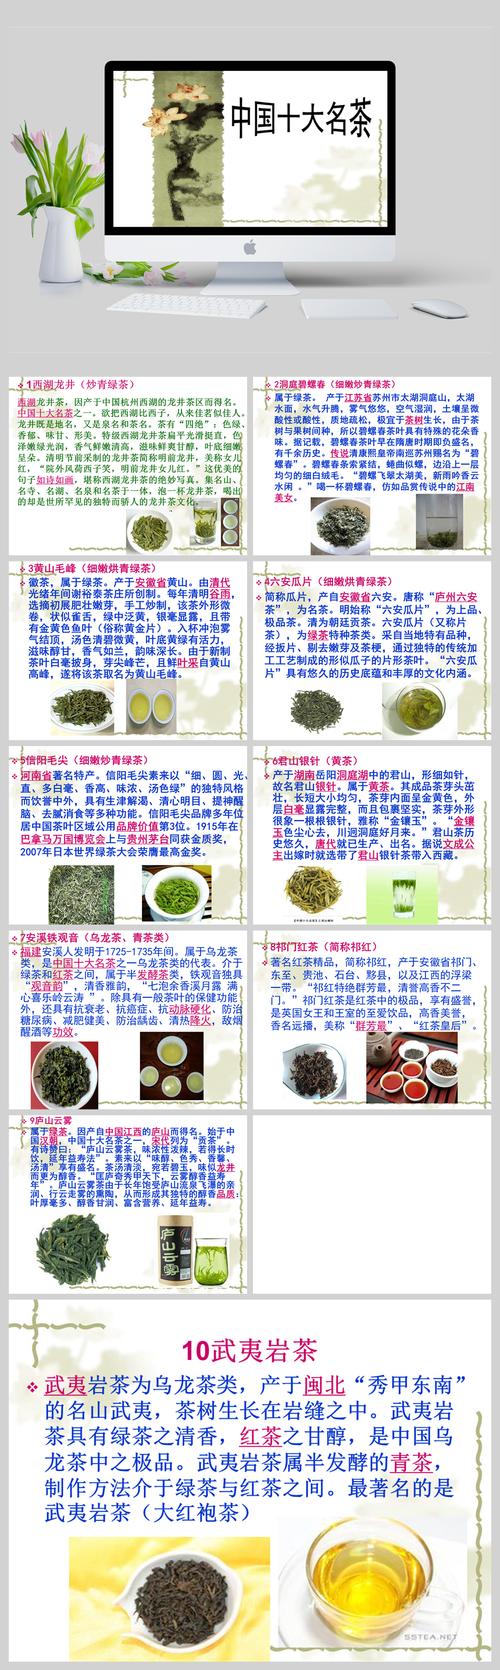 介绍中国十大名茶并写出茶的产地名称手术种类主要特点